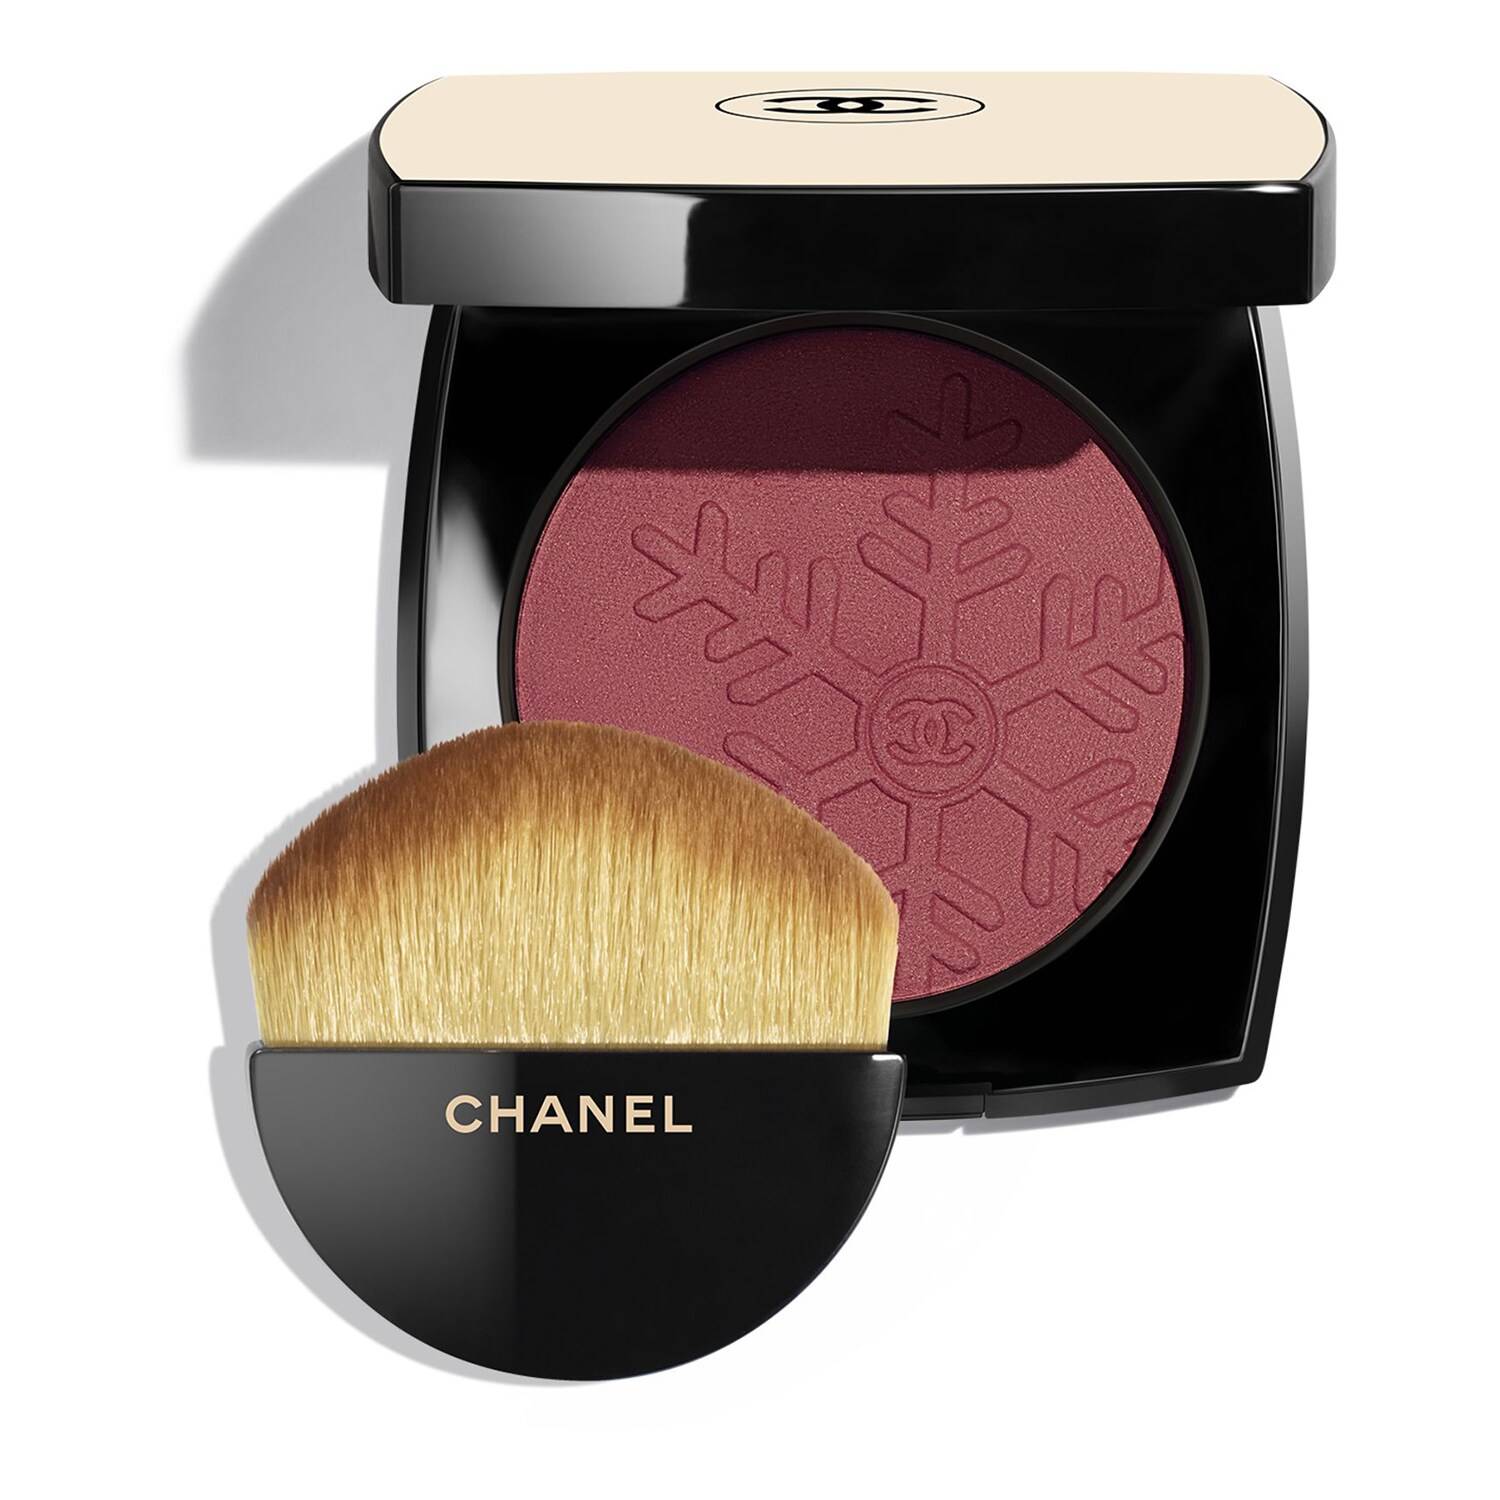 Chanel Les Beiges Healthy Winter Glow Blush 11G Mauve Glace